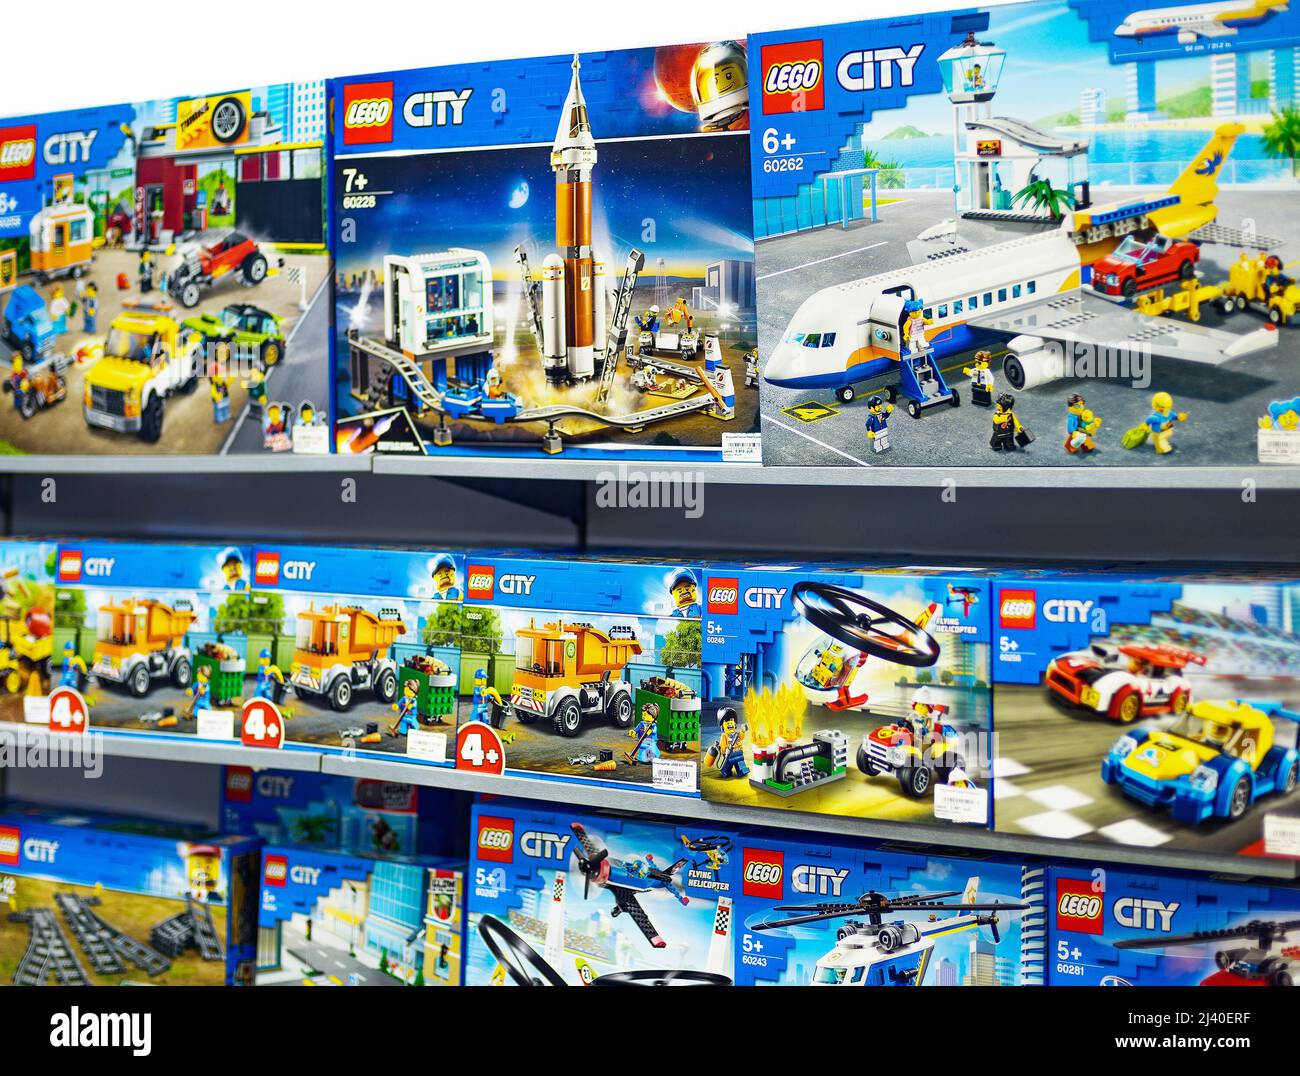 2021: Rayonnages avec les constructeurs Lego de la série City Banque D'Images